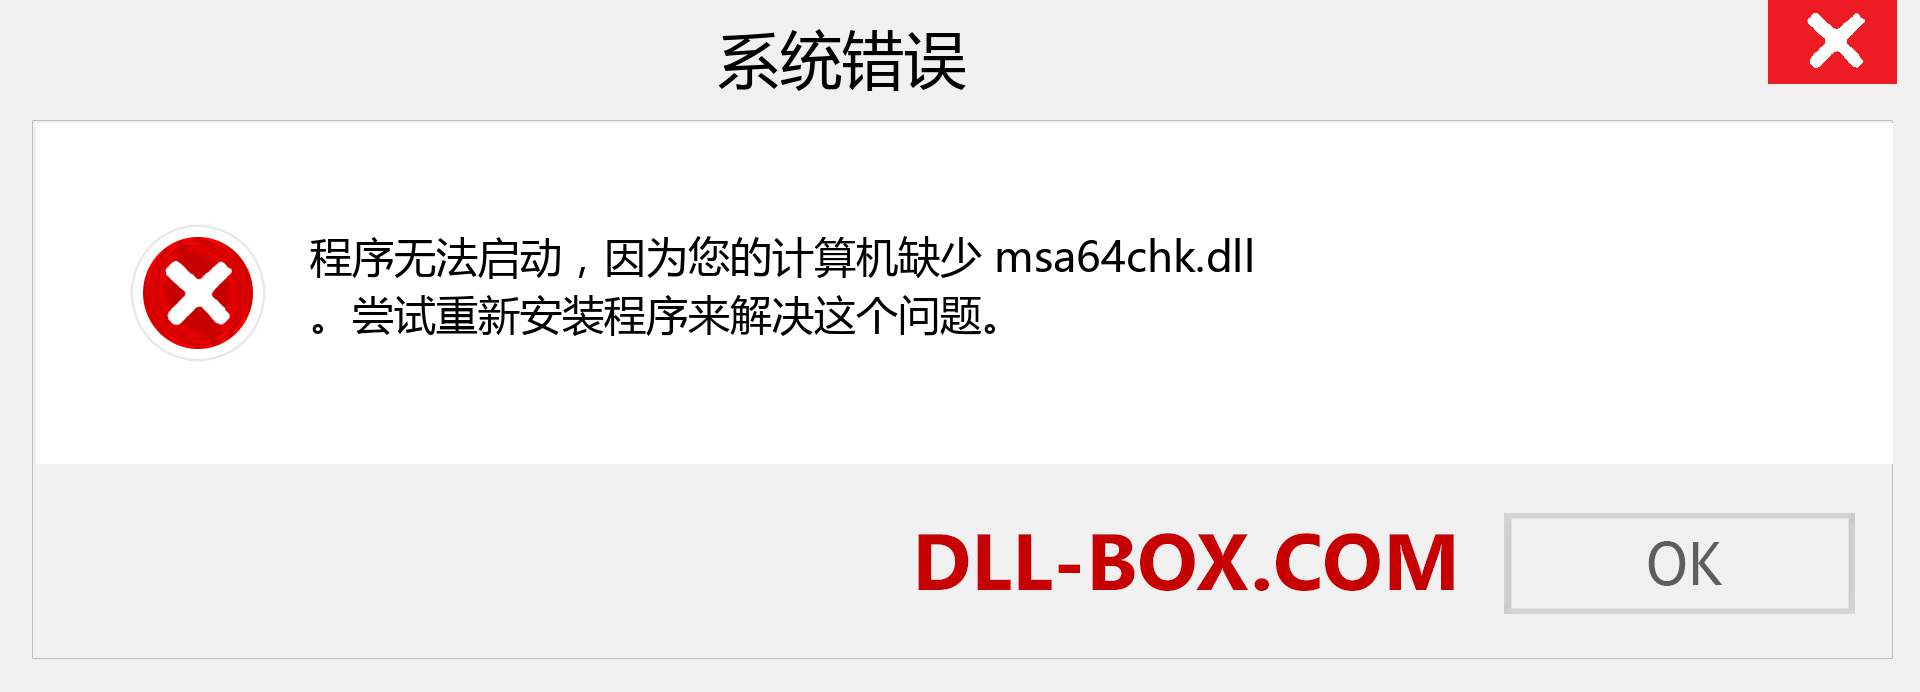 msa64chk.dll 文件丢失？。 适用于 Windows 7、8、10 的下载 - 修复 Windows、照片、图像上的 msa64chk dll 丢失错误